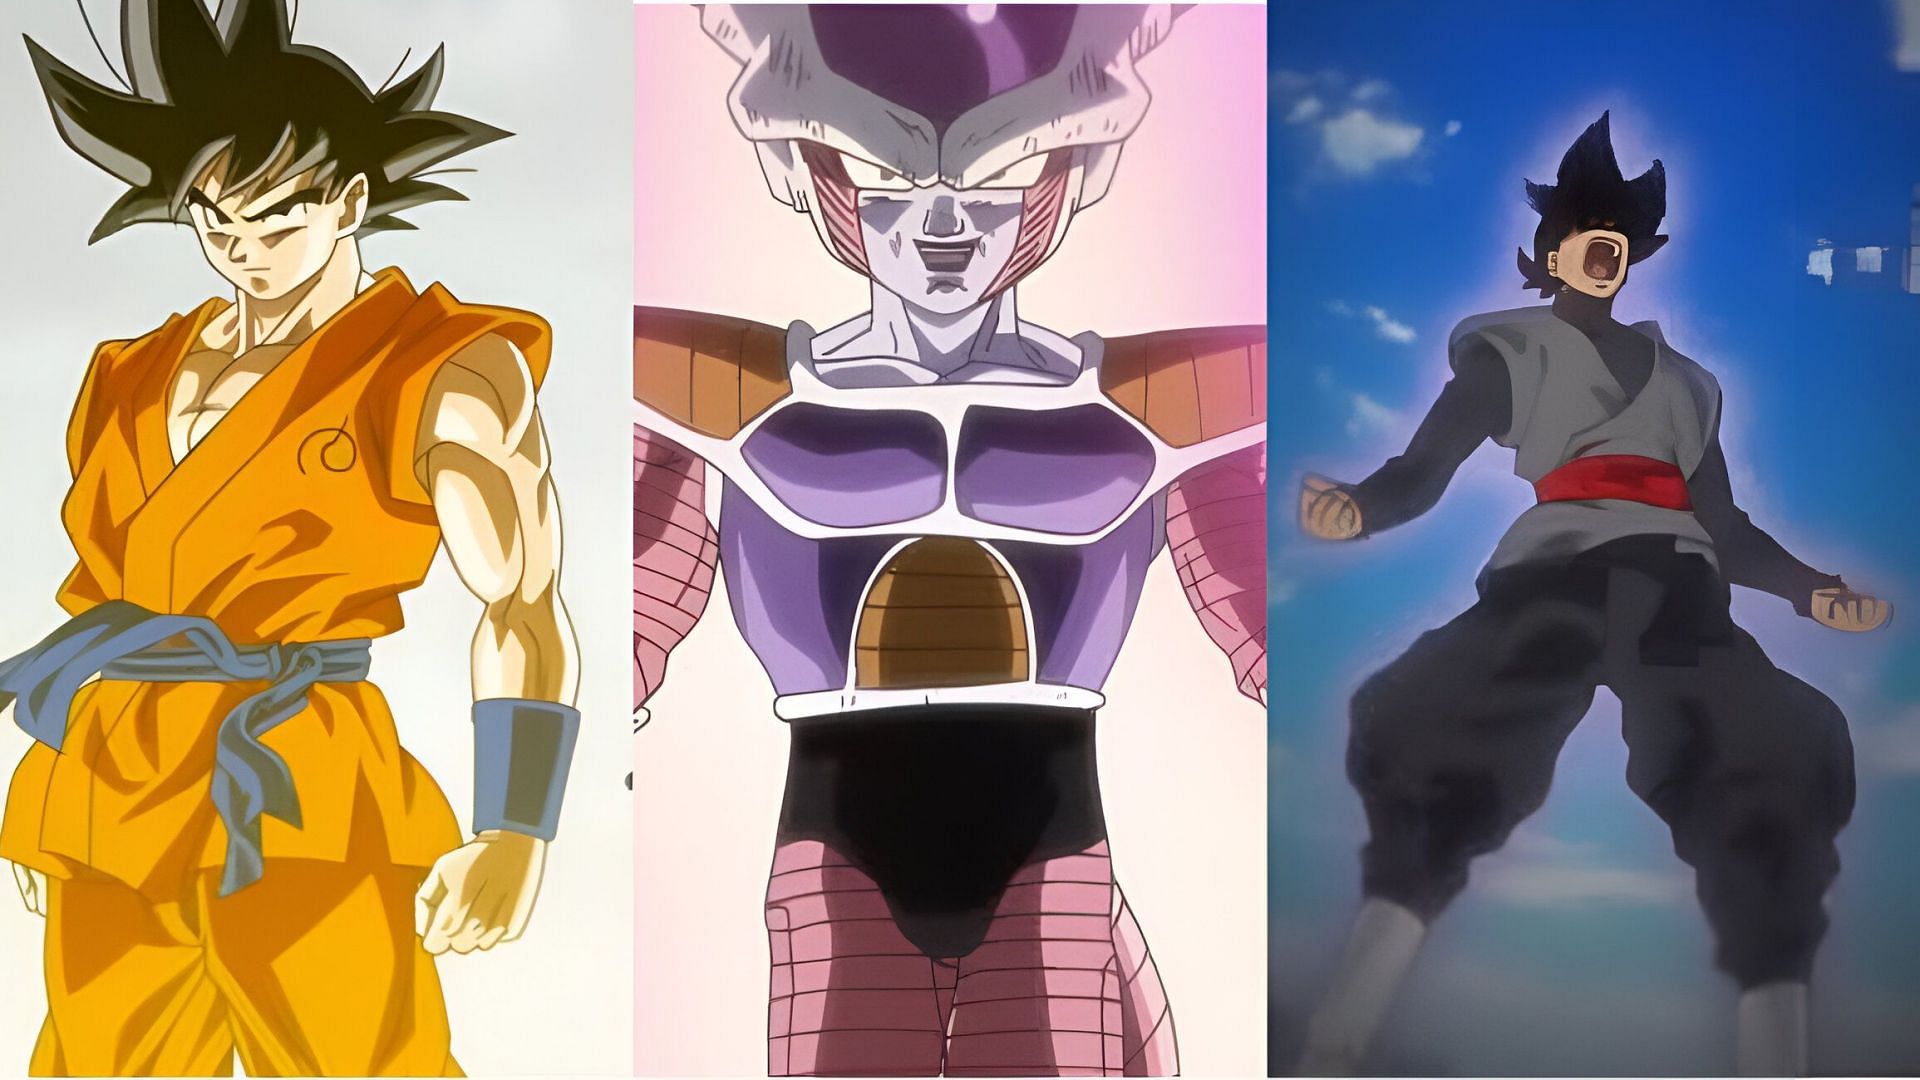 Goku (left). Frieza (middle). Black Goku (right) (Image via Toei Animation)